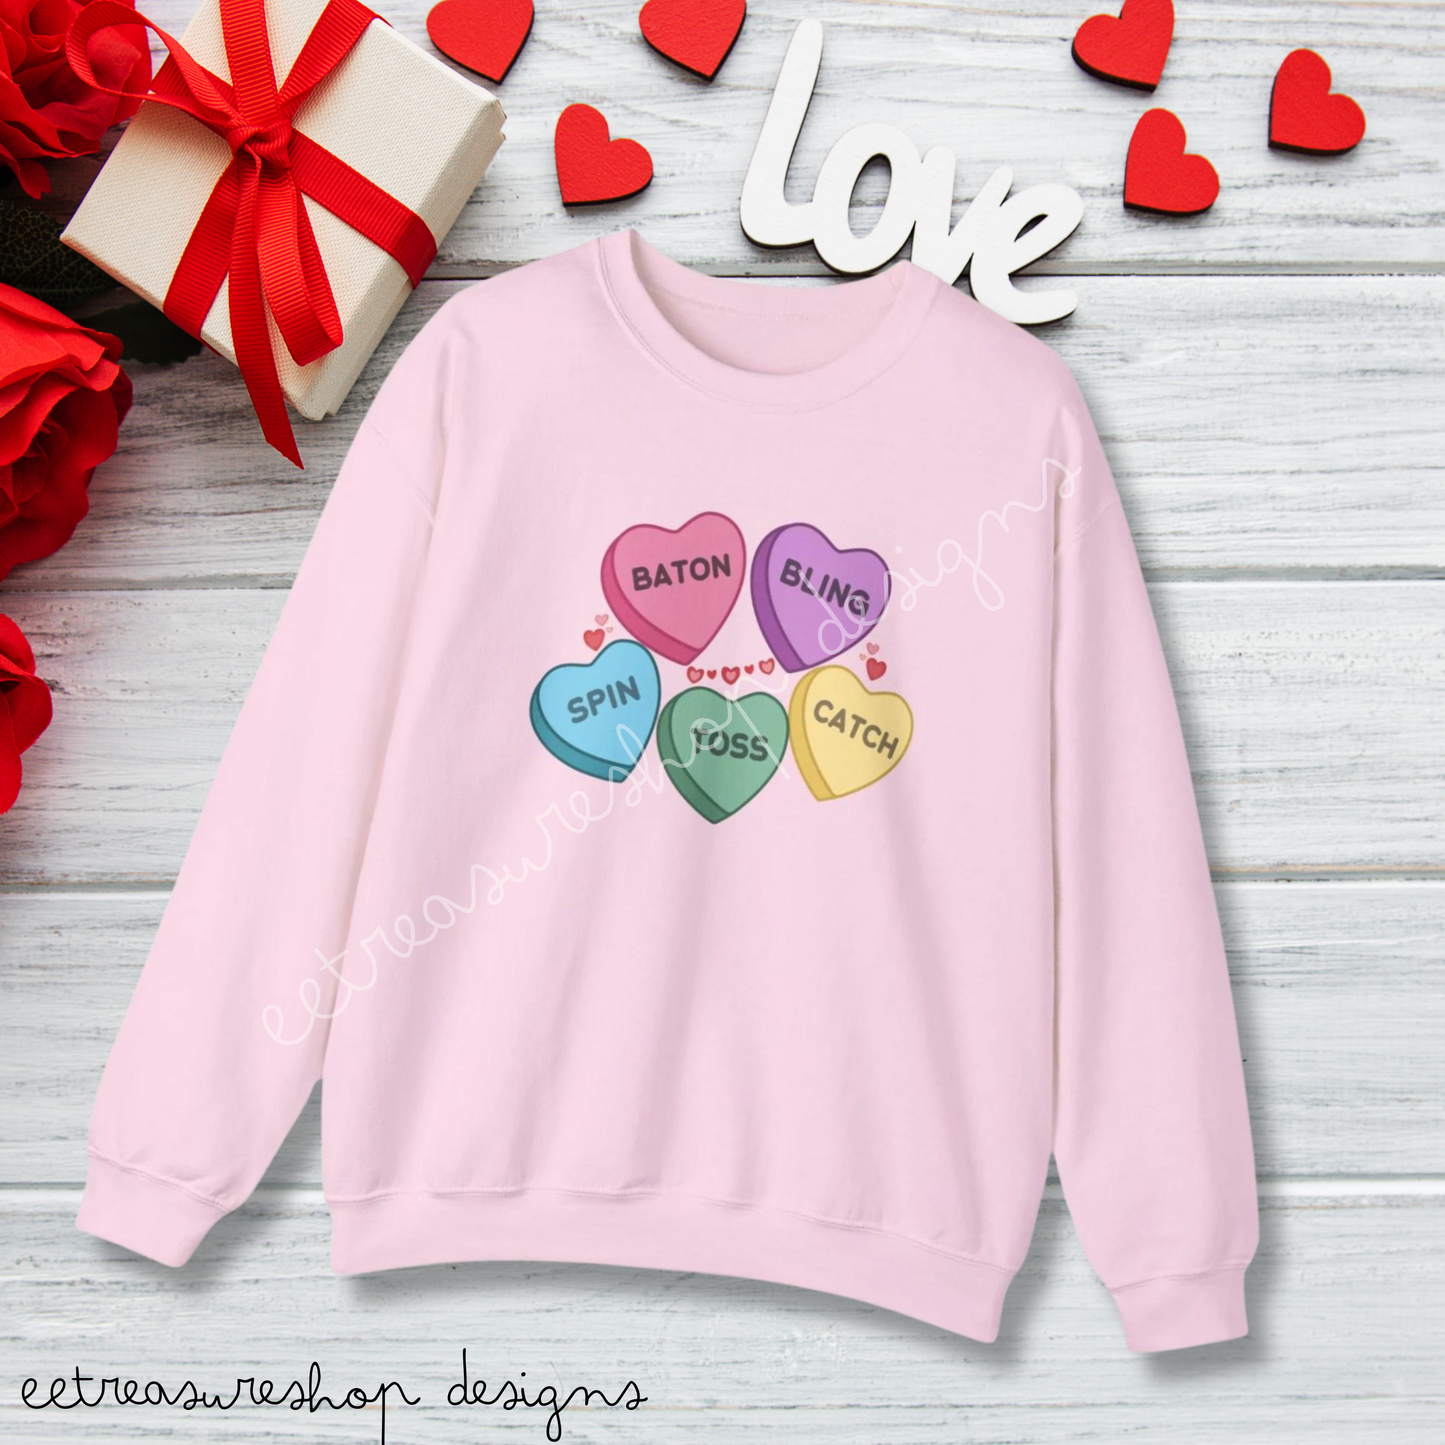 Candy Hearts Twirler Valentines Day Unisex Heavy Blend Crewneck Sweatshirt, Baton Twirler Valentines Shirt, Gift for Twirler